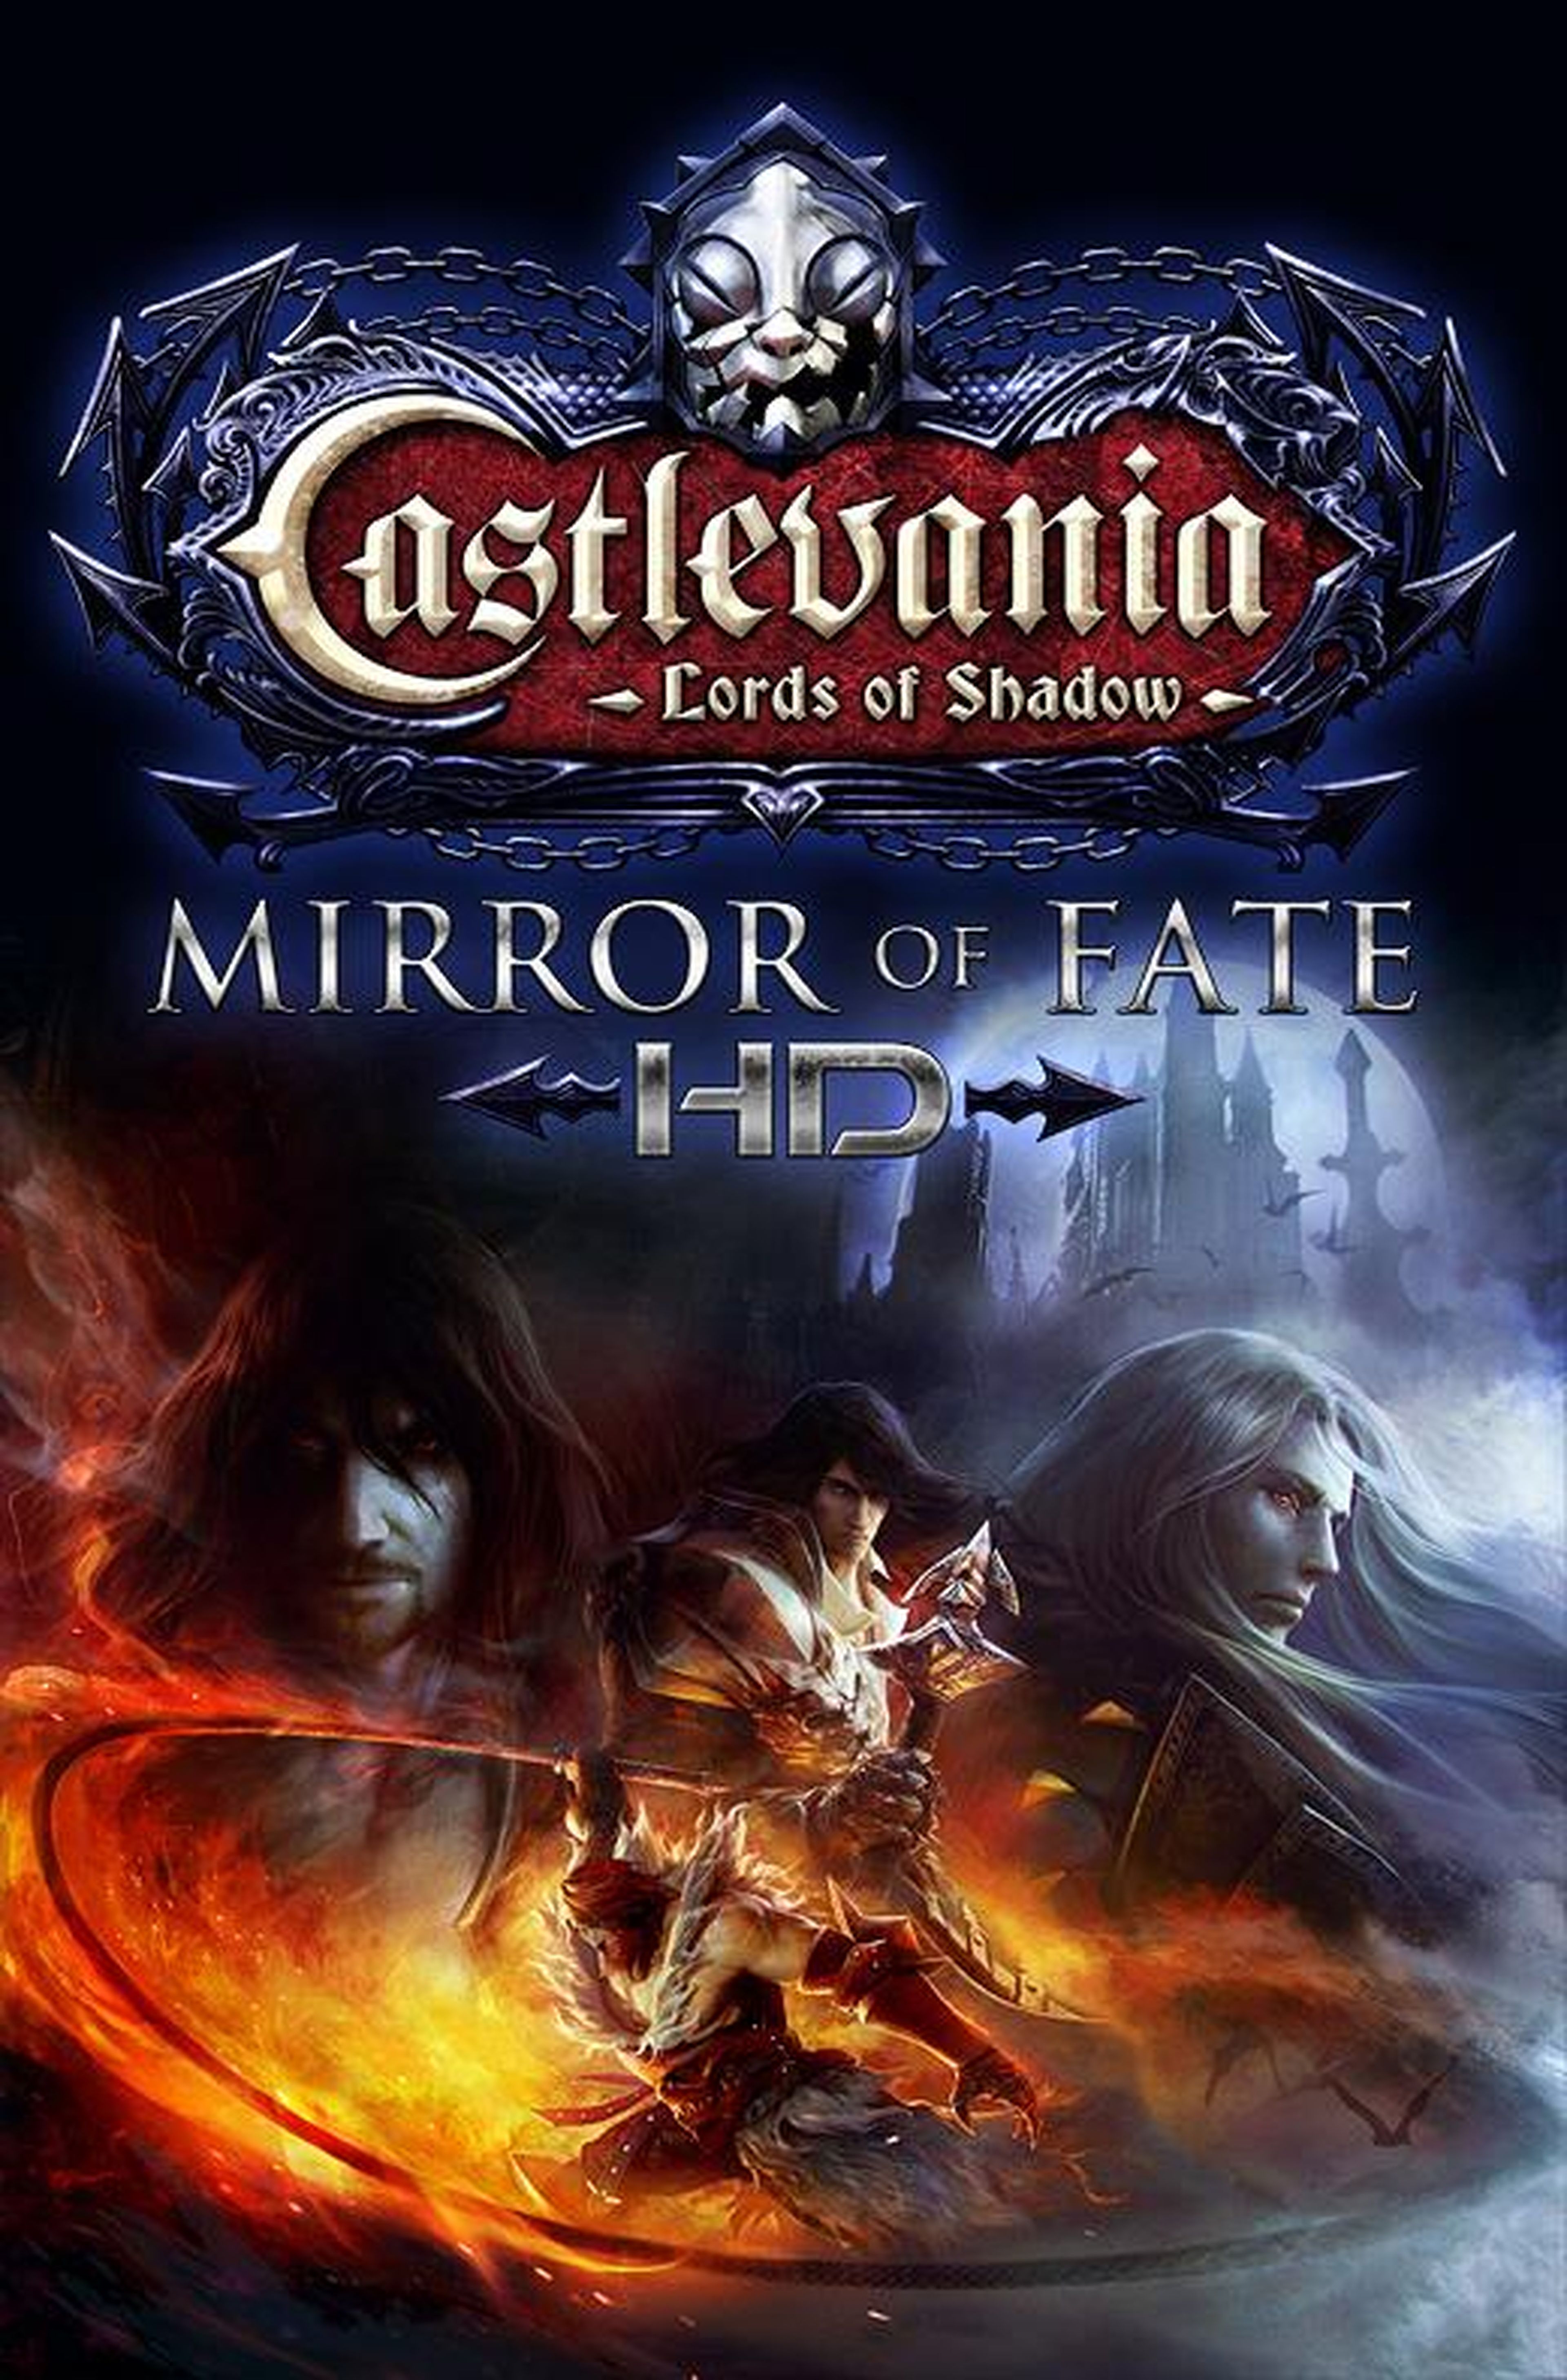 Castlevania LoS Mirror of Fate HD para PS3 y 360 confirmado